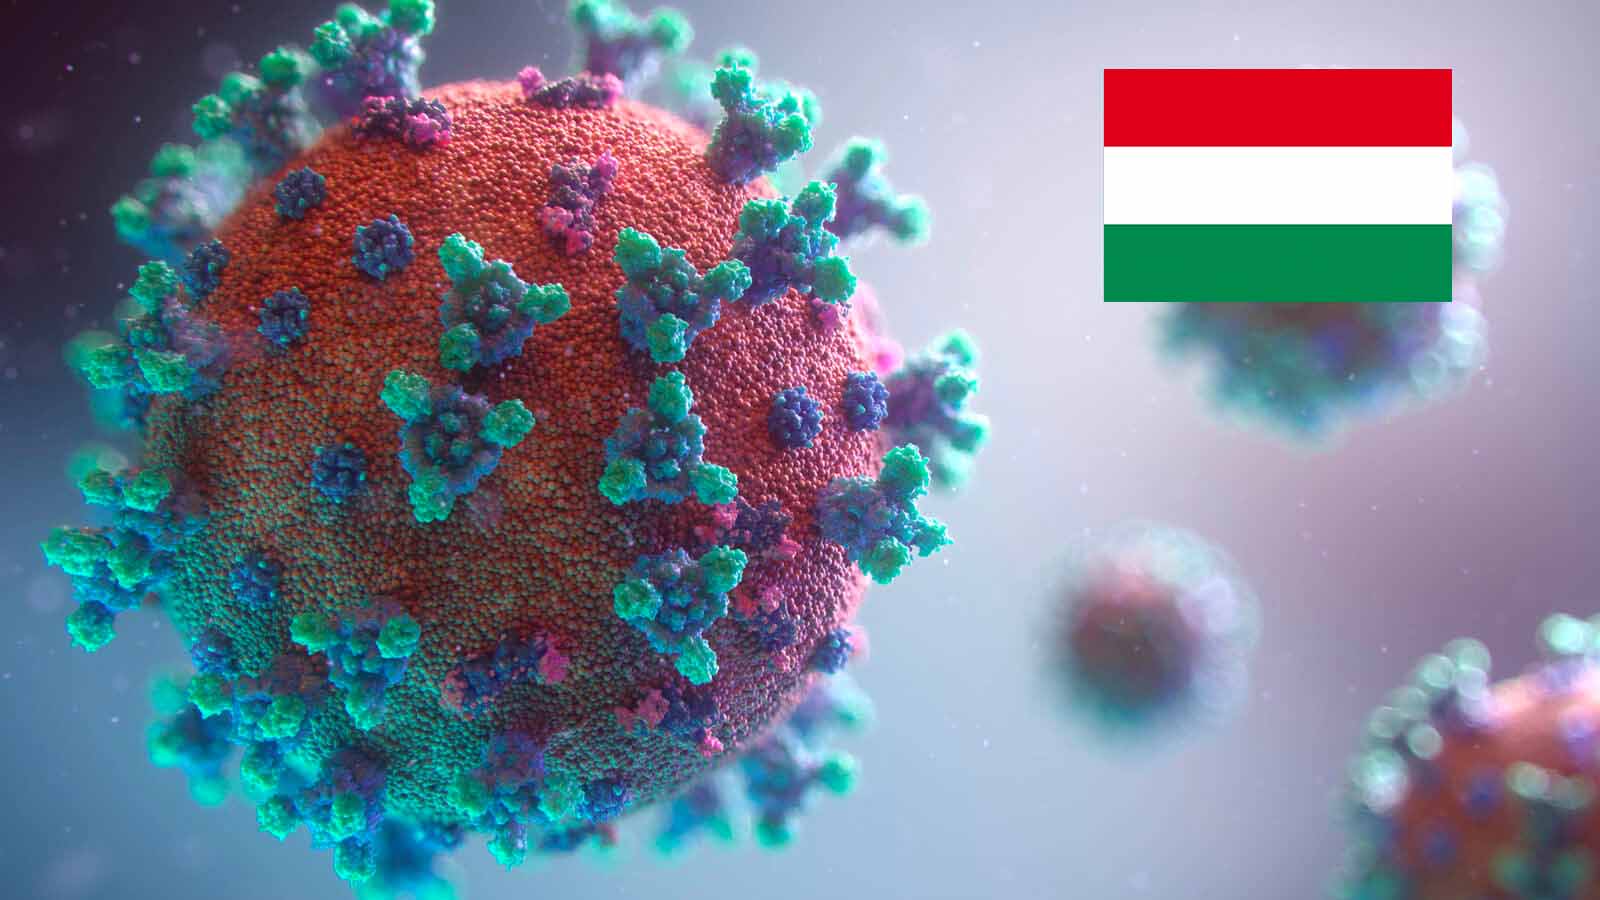 Darstellung Corona Virus mit ungarischer Flagge oben rechts